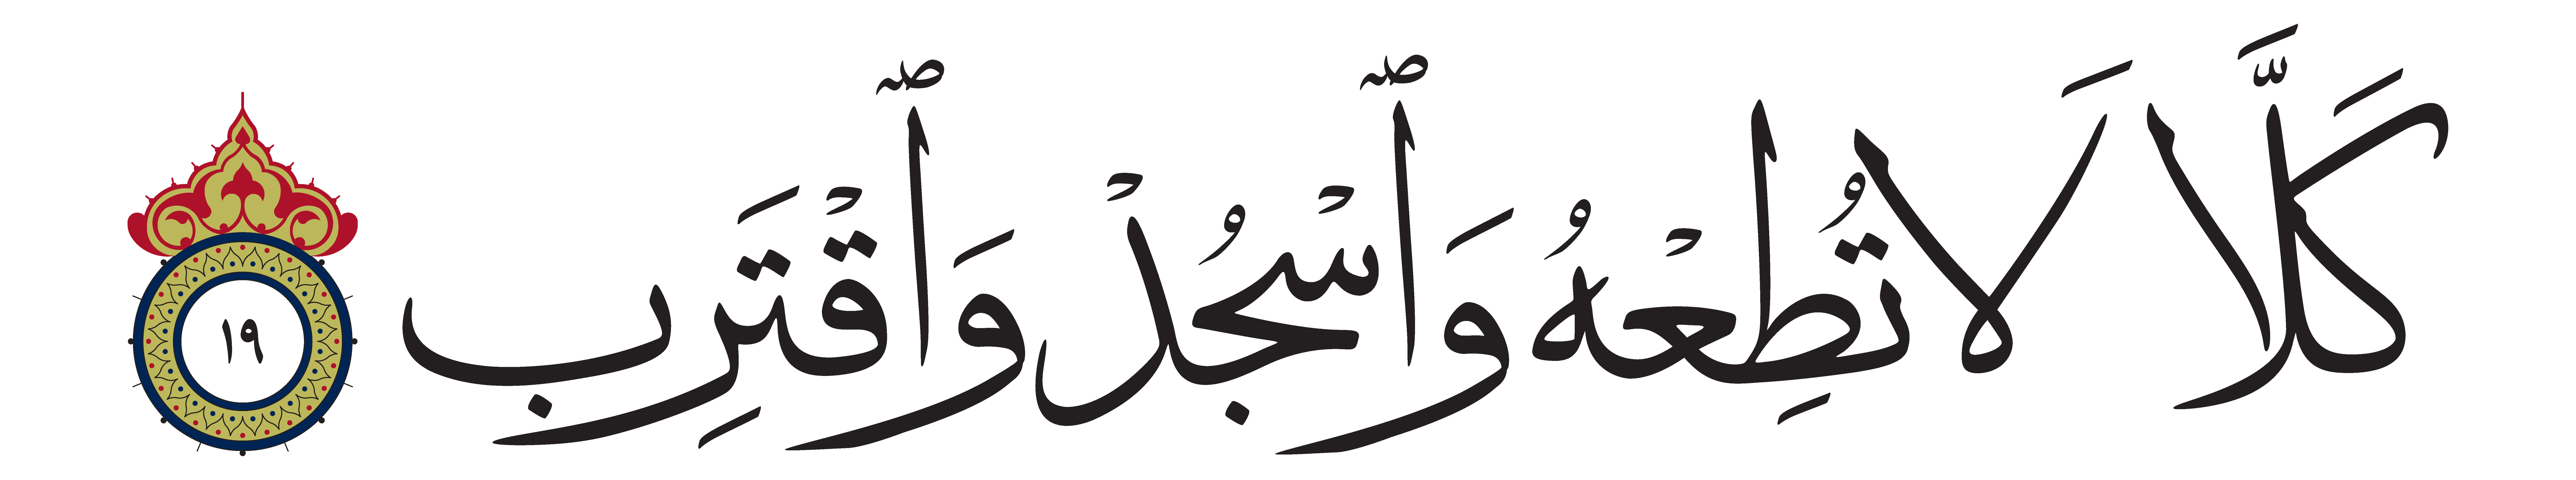 Al-alaq